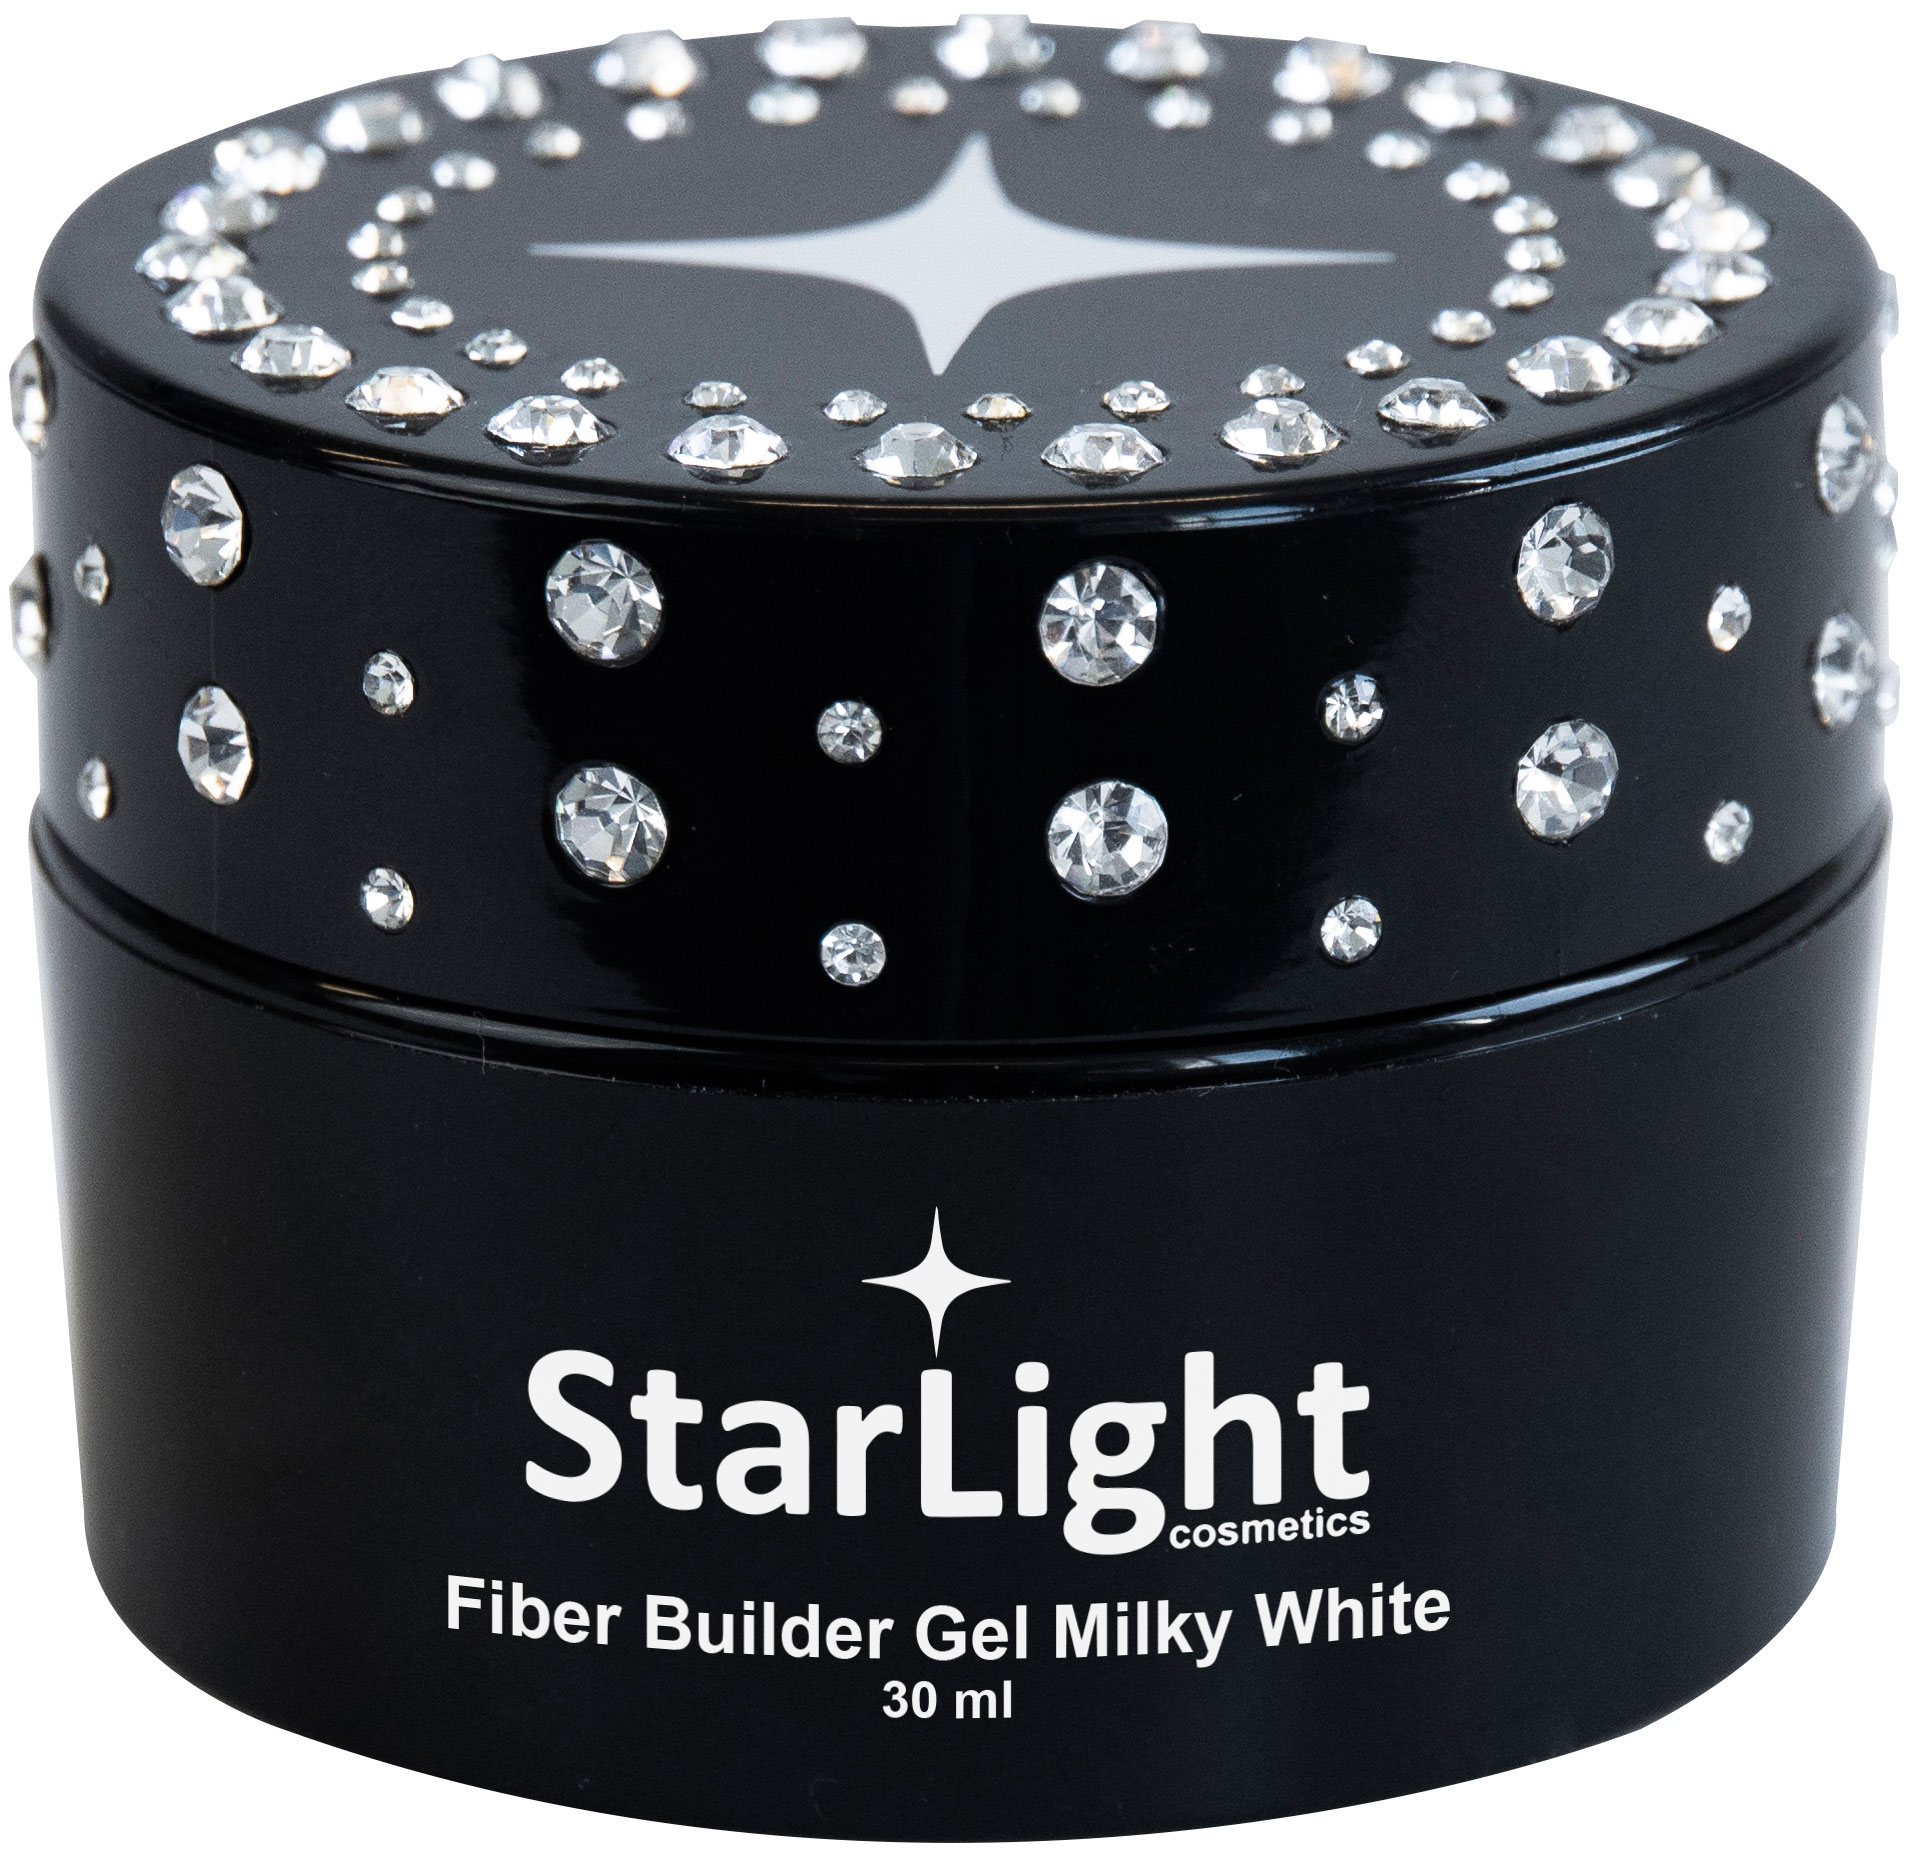 Naglar Fiber Builder Gel Milky White - 30 ml